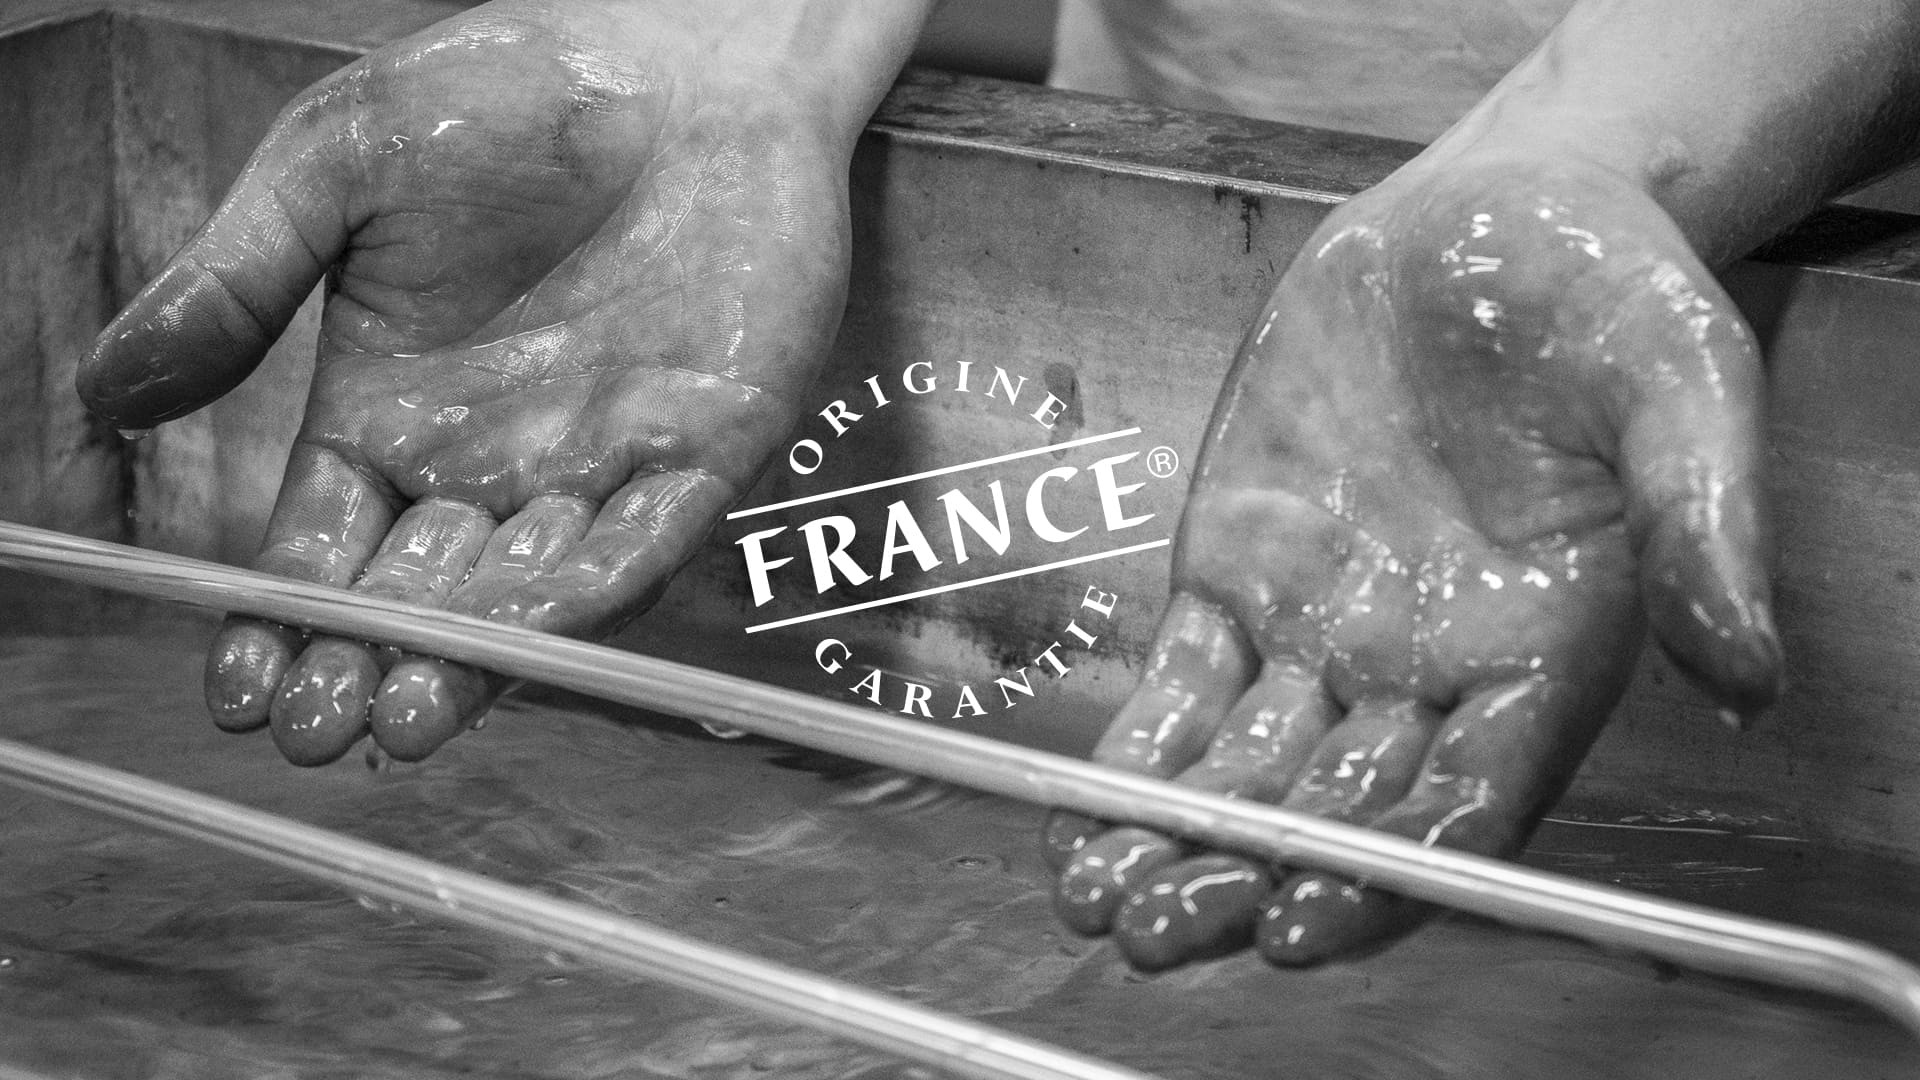 Nur das Label Origine France Garantie bescheinigt die Produktion in Frankreich. - 2012 von EuroCave erhalten